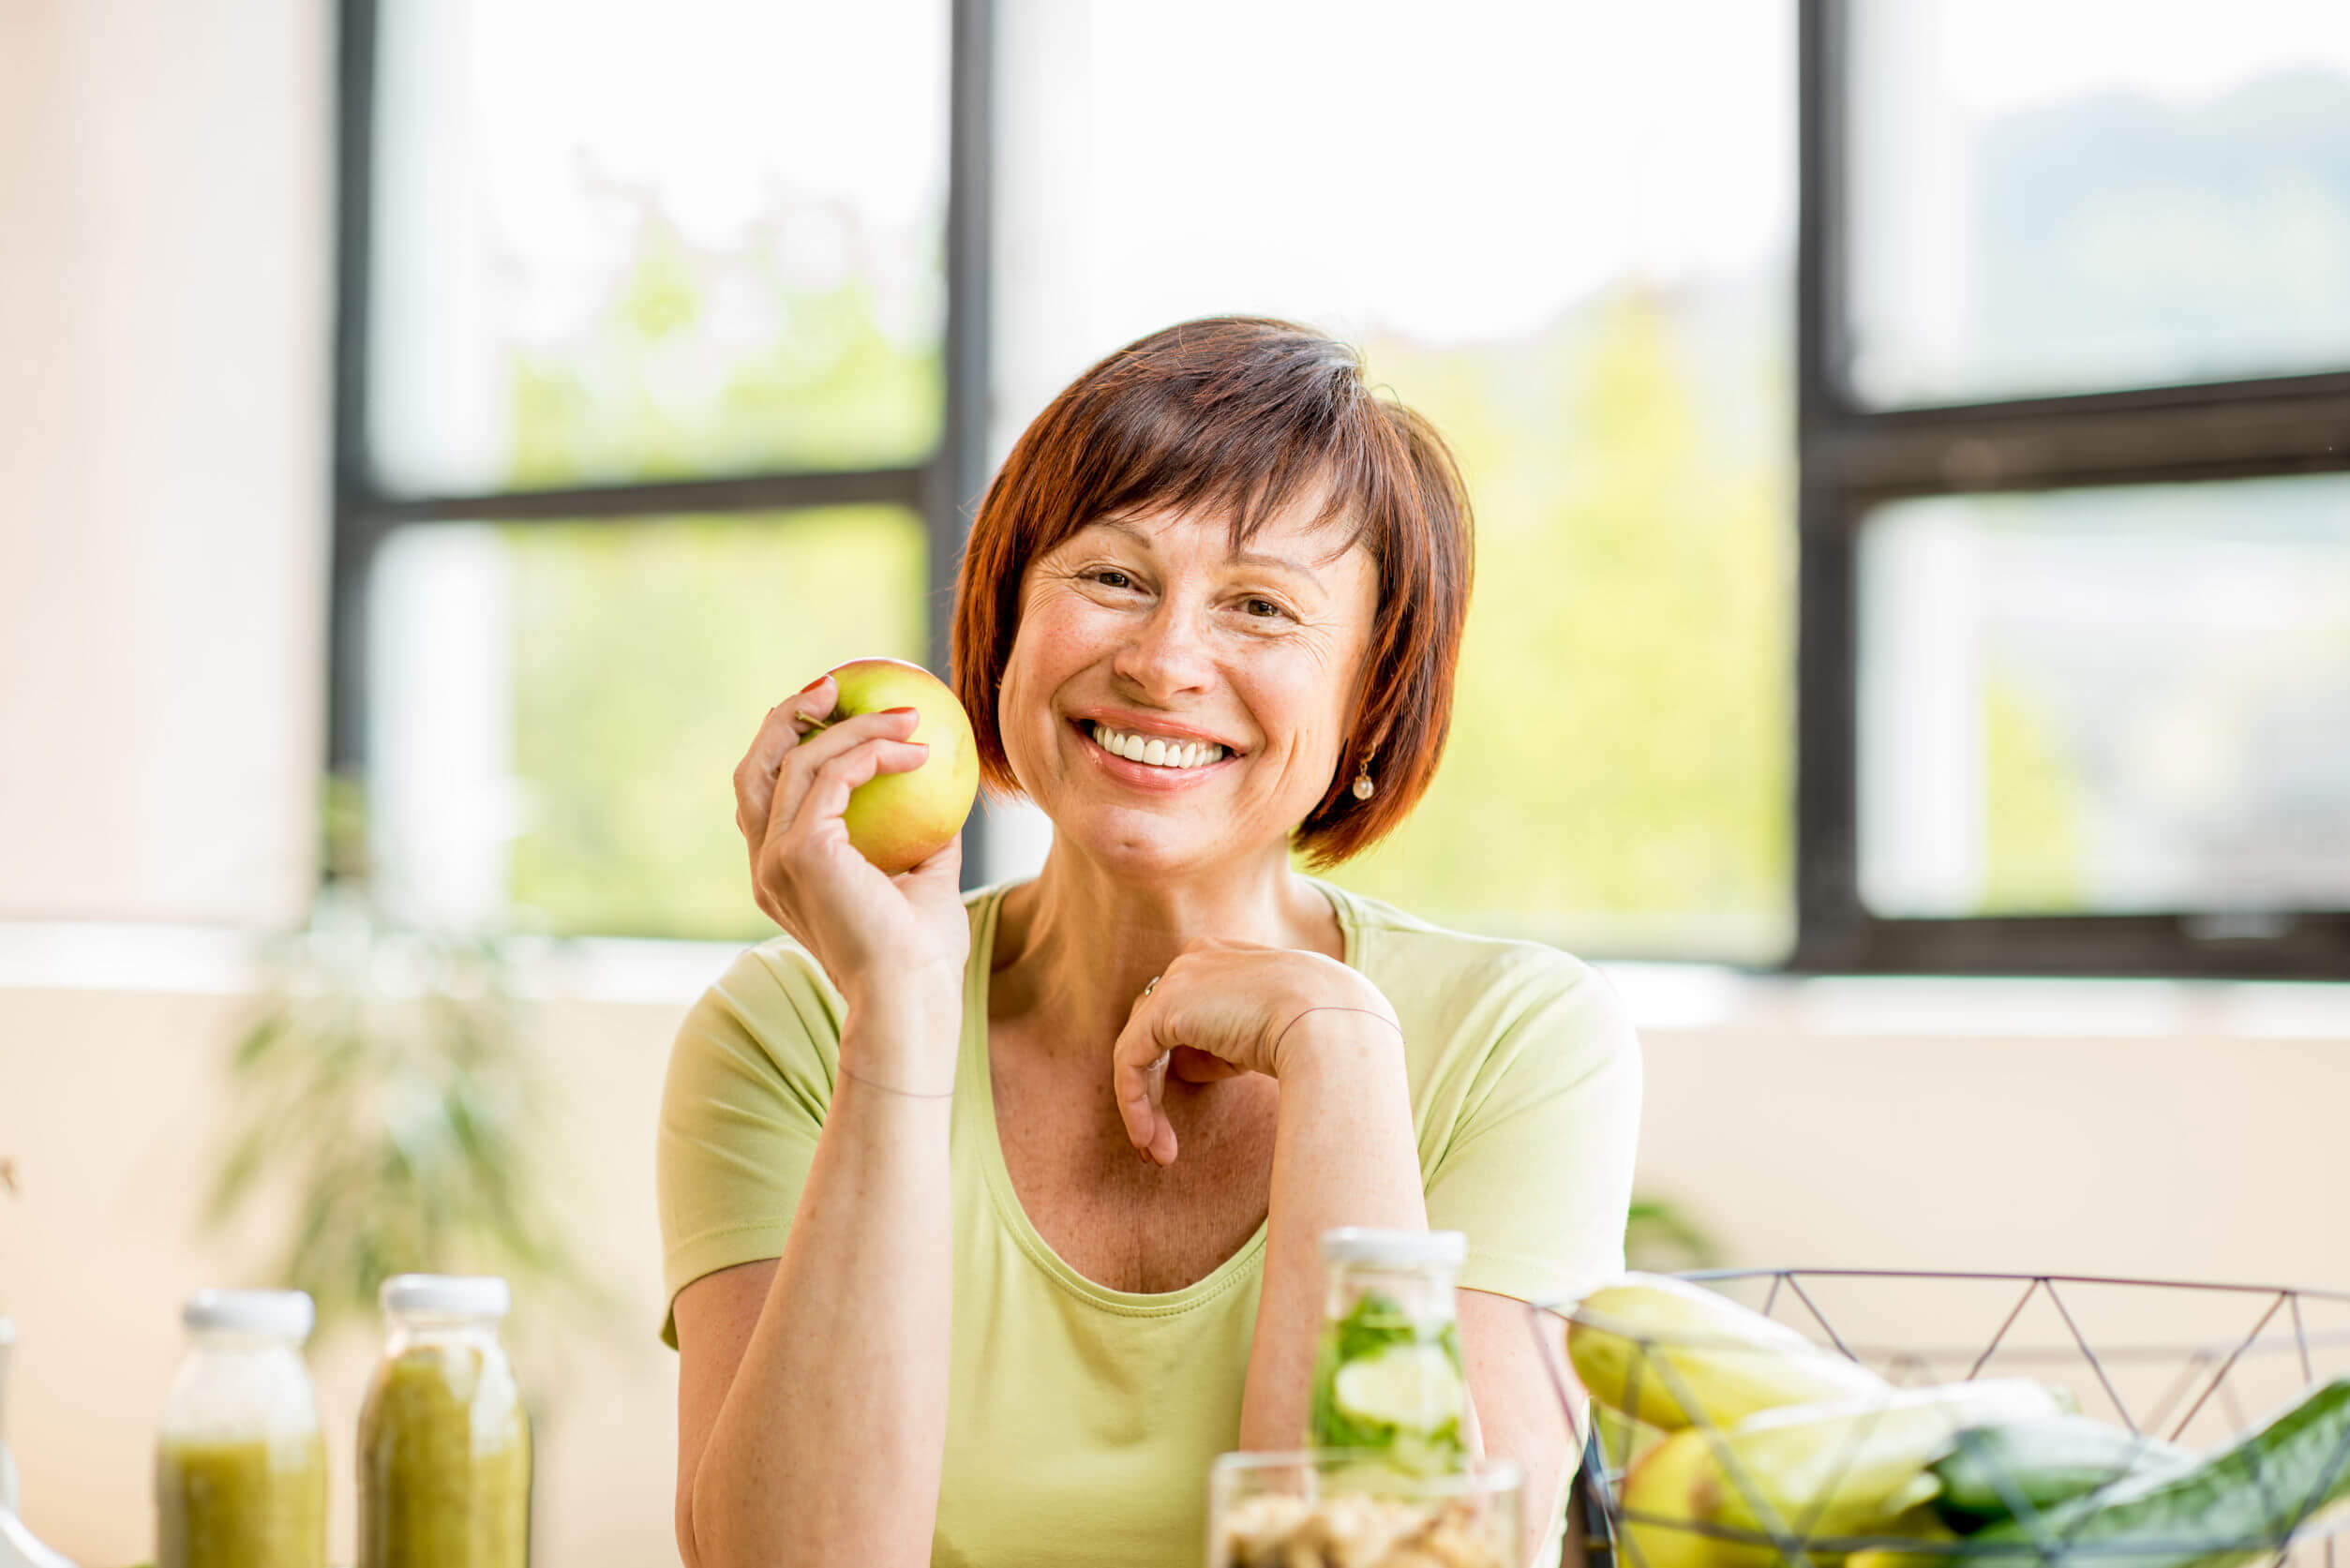 Una de las ventajas de la dieta lipofídica es que se favorece el consumo de frutas y verduras.